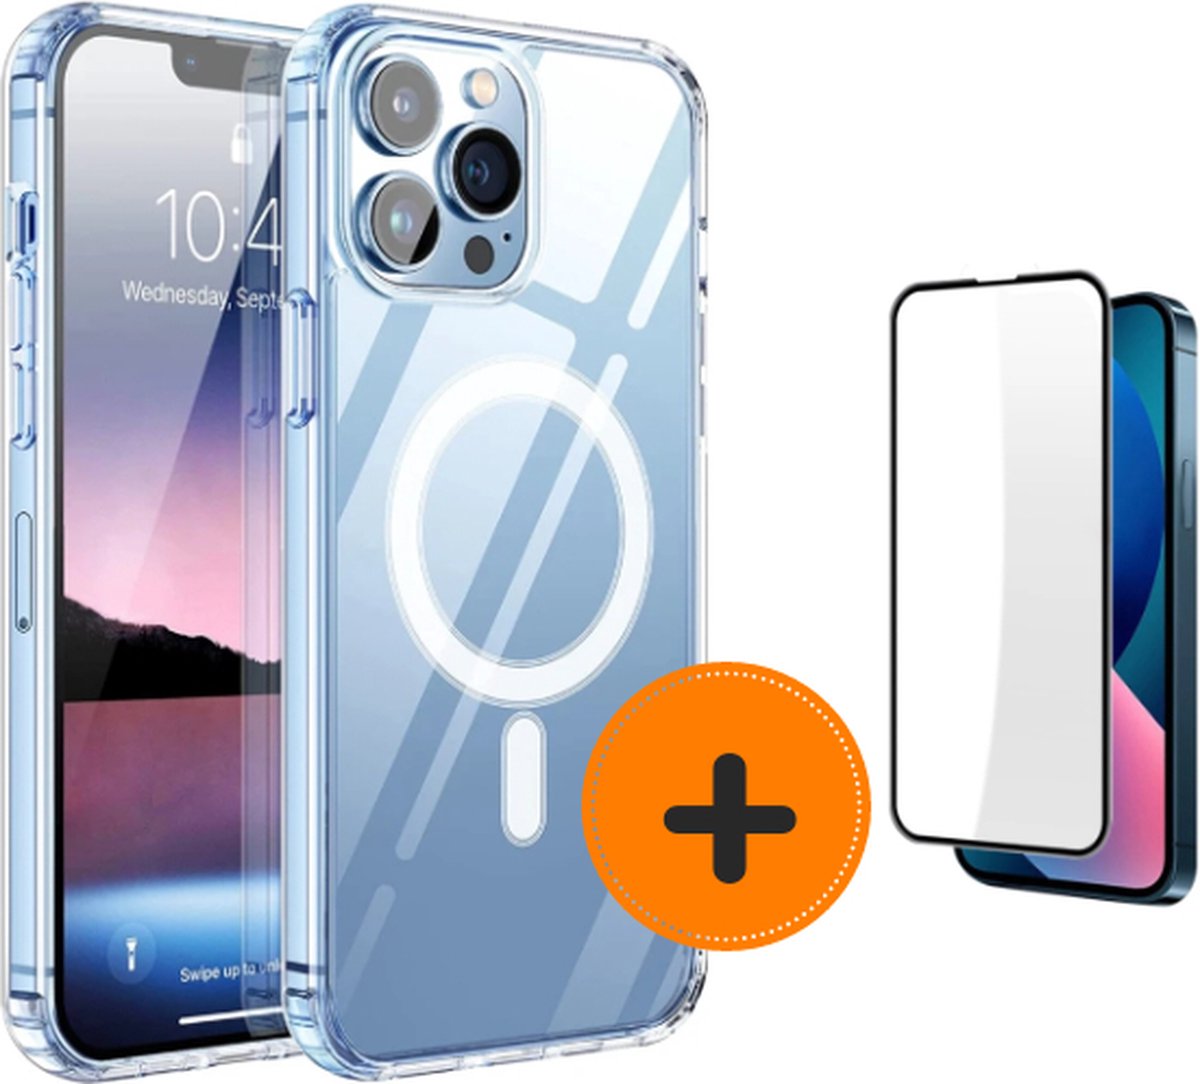 Bundel iPhone 13 Pro Max MagSafe telefoonhoesje inclusief screenprotector- shoptelefoonhoesje - sterke magneet inclusief screenprotector